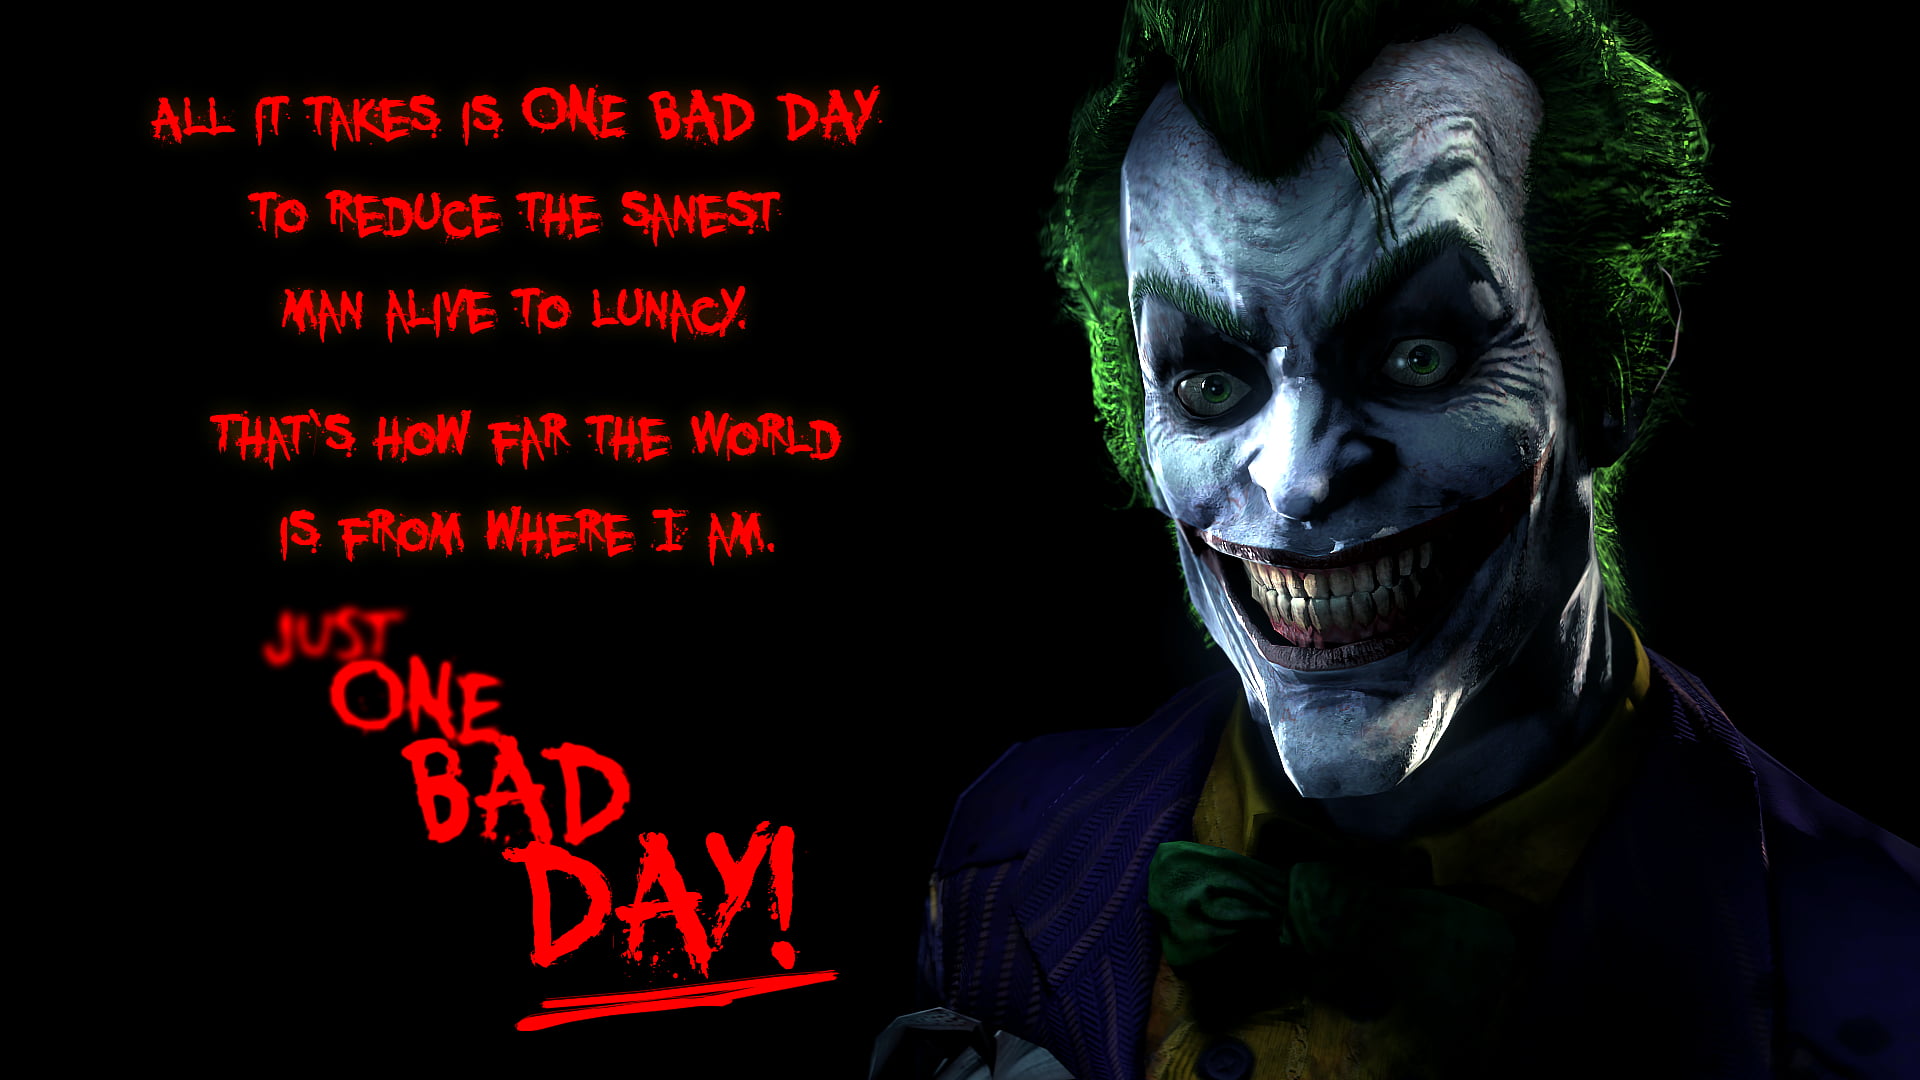 The Joker with text overlay wallpaper, headshot, portrait, illuminated